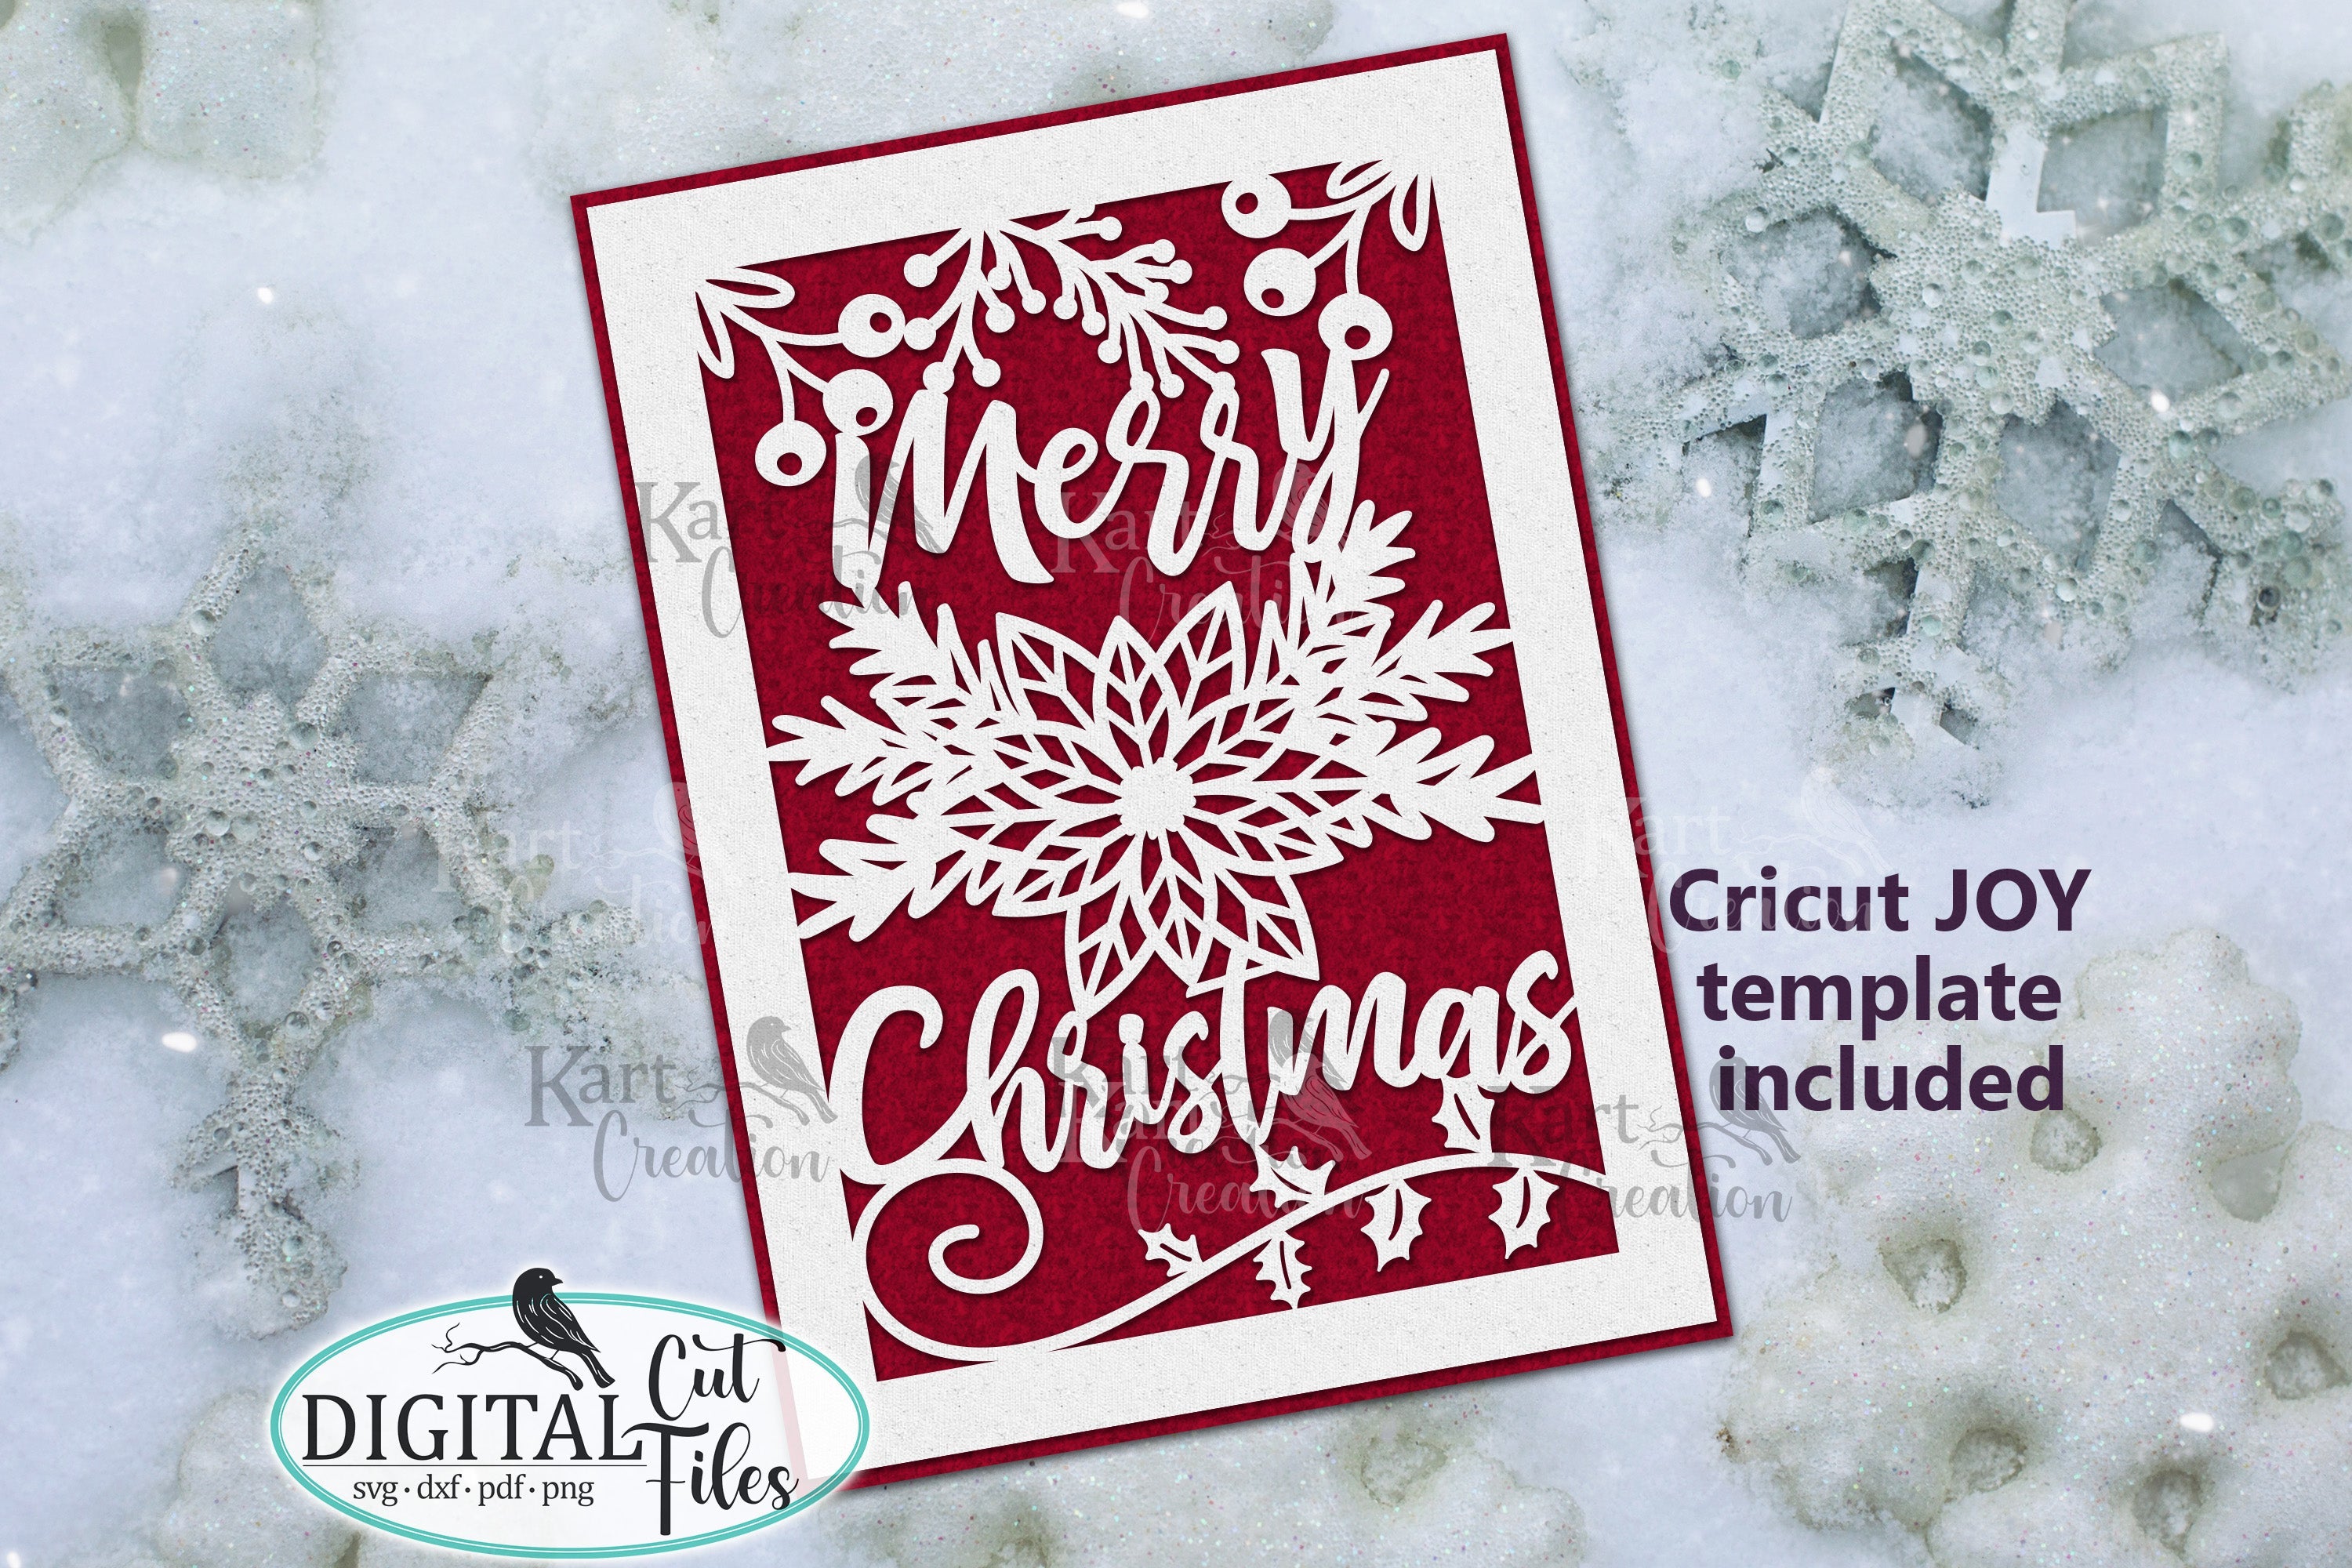 JOY Christmas Card with Cricut Insert Cards  Joy christmas card, Christmas  cards, Joy cards